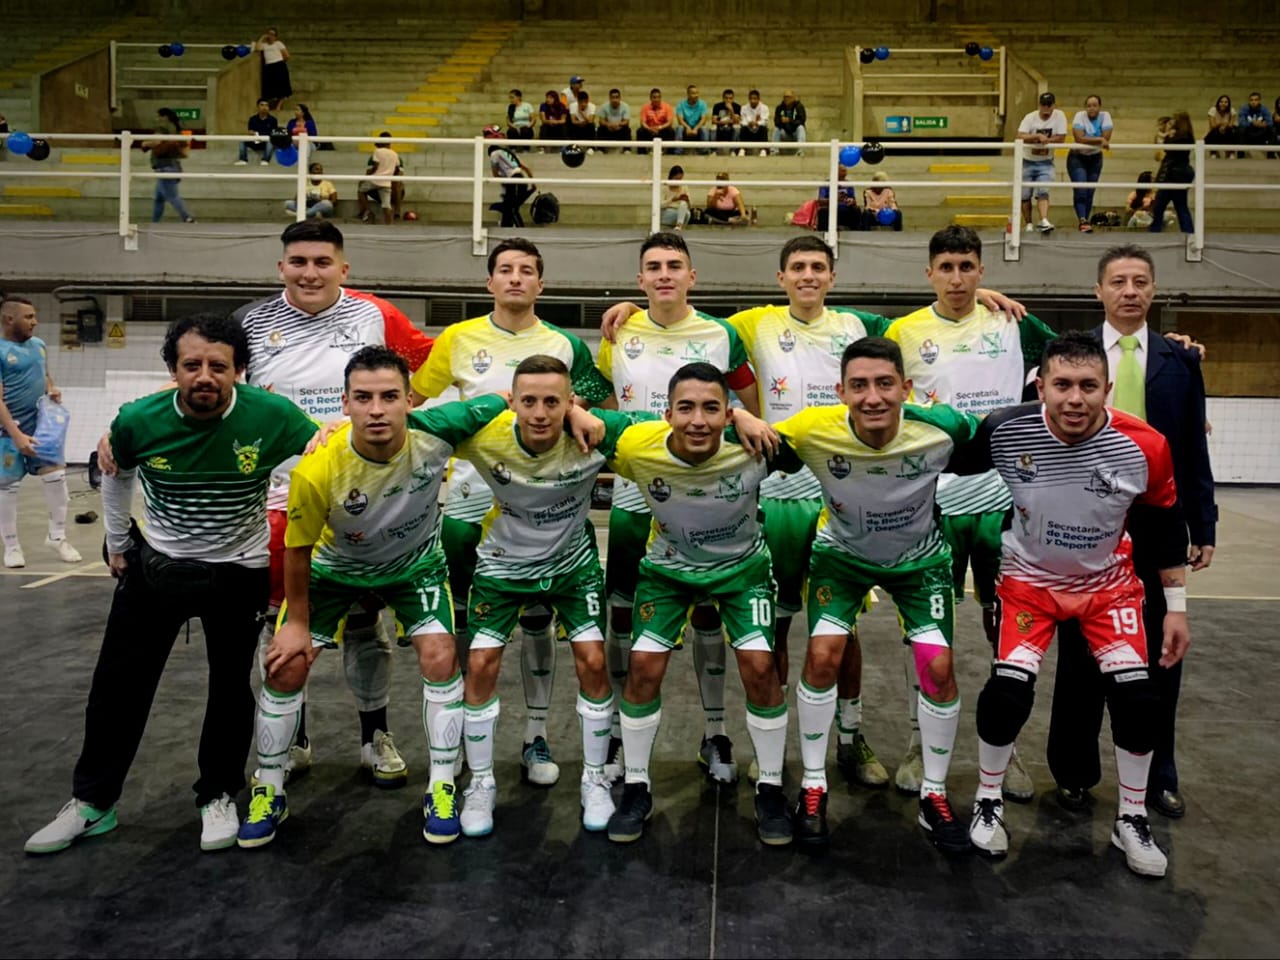 Nariño FS por la victoria en Superliga de microfutbol